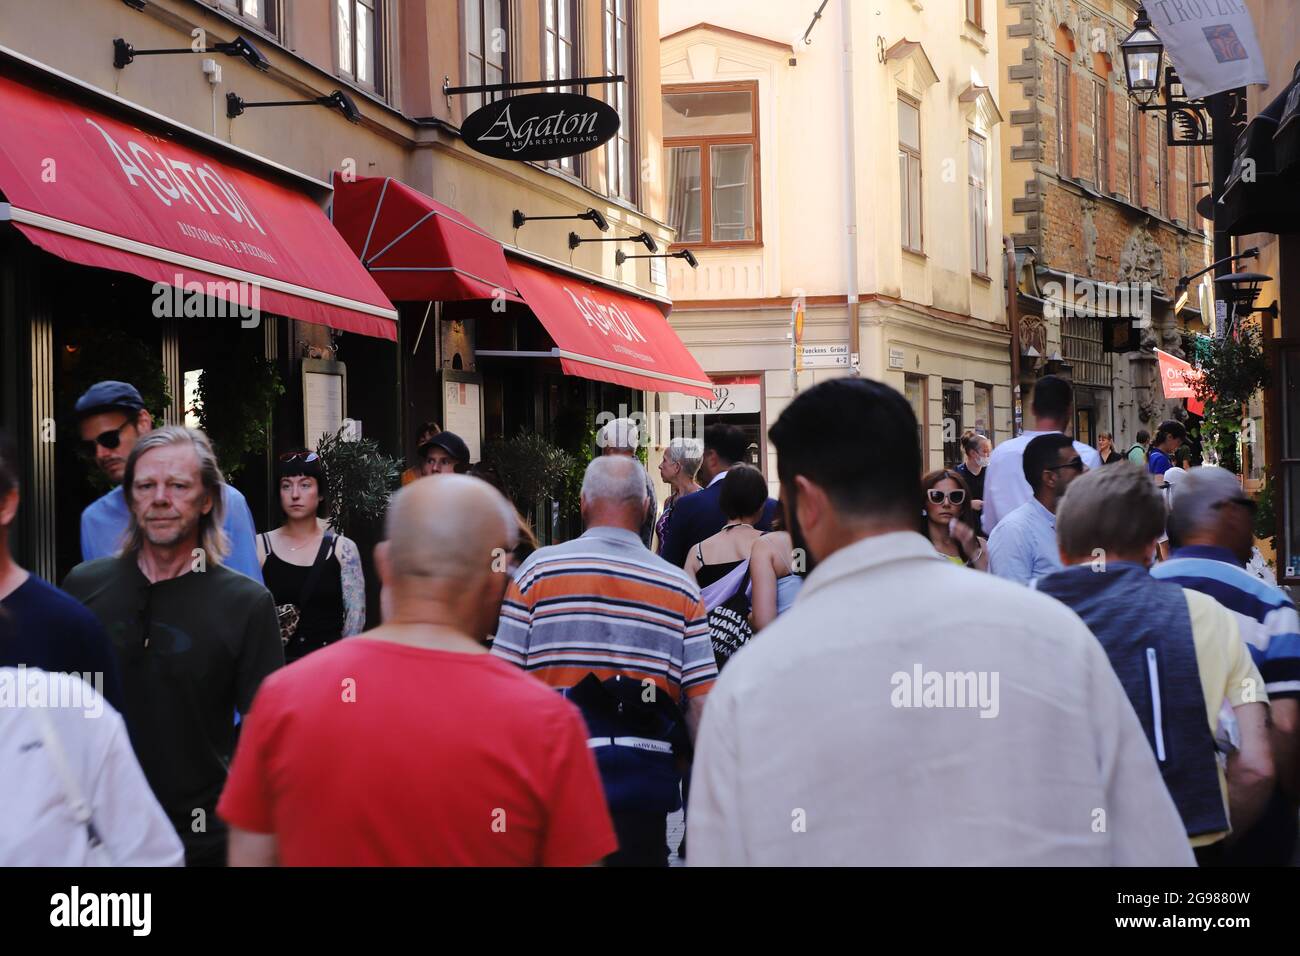 Stoccolma, Svezia - 21 luglio 2021: L'affollata via Vasterlangatan nel quartiere della città vecchia vicino al ristorante Agaton. Foto Stock